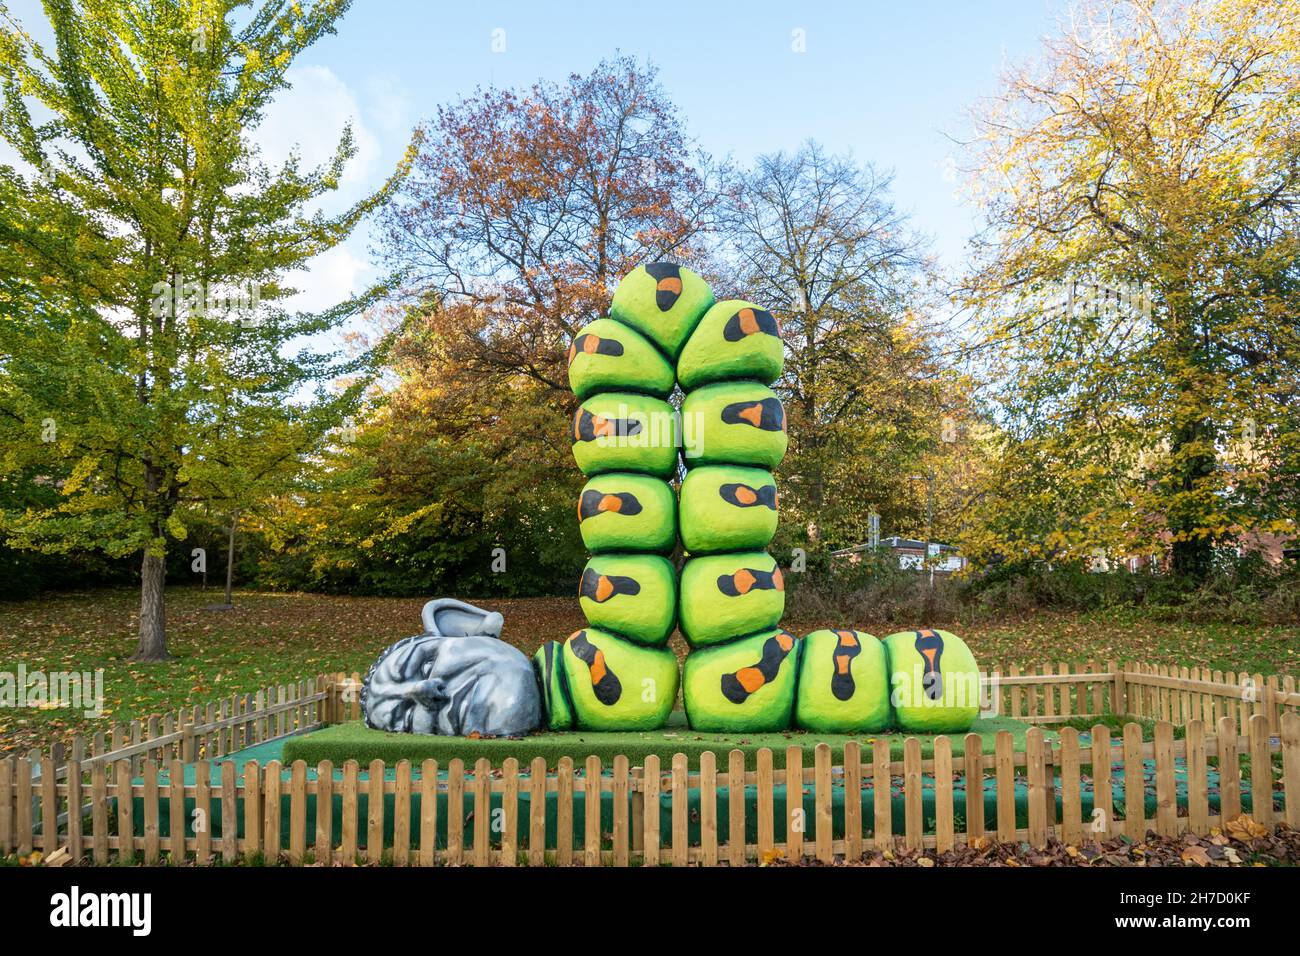 Sculpture de chenille Alfie Bradley avec tête humaine dans le parc Dale End à Ironbridge, Shropshire, Angleterre, Royaume-Uni, pendant l'automne ou novembre Banque D'Images